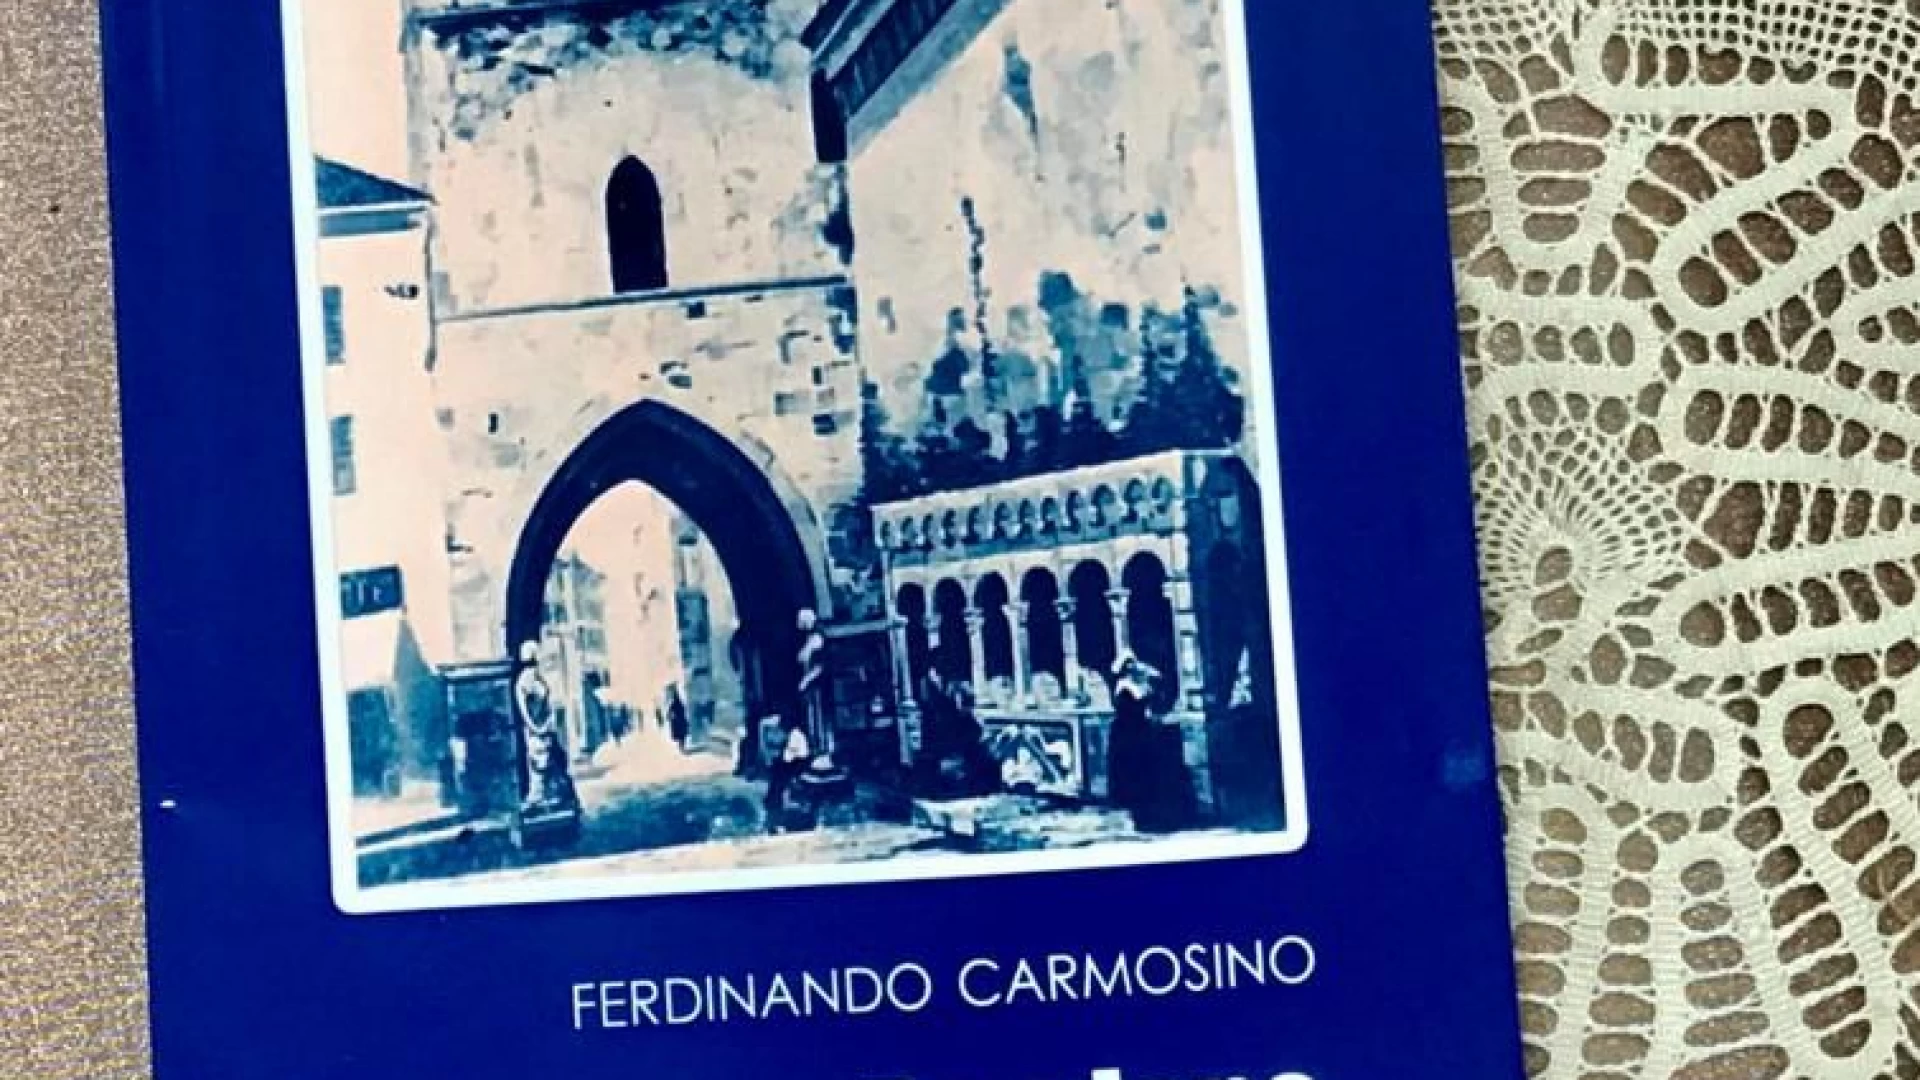 Isernia: all’Ordine dei medici si presenta il libro di Ferdinando Carmosino dal titolo “Damiano. Isernia tra sogno e realtà”.